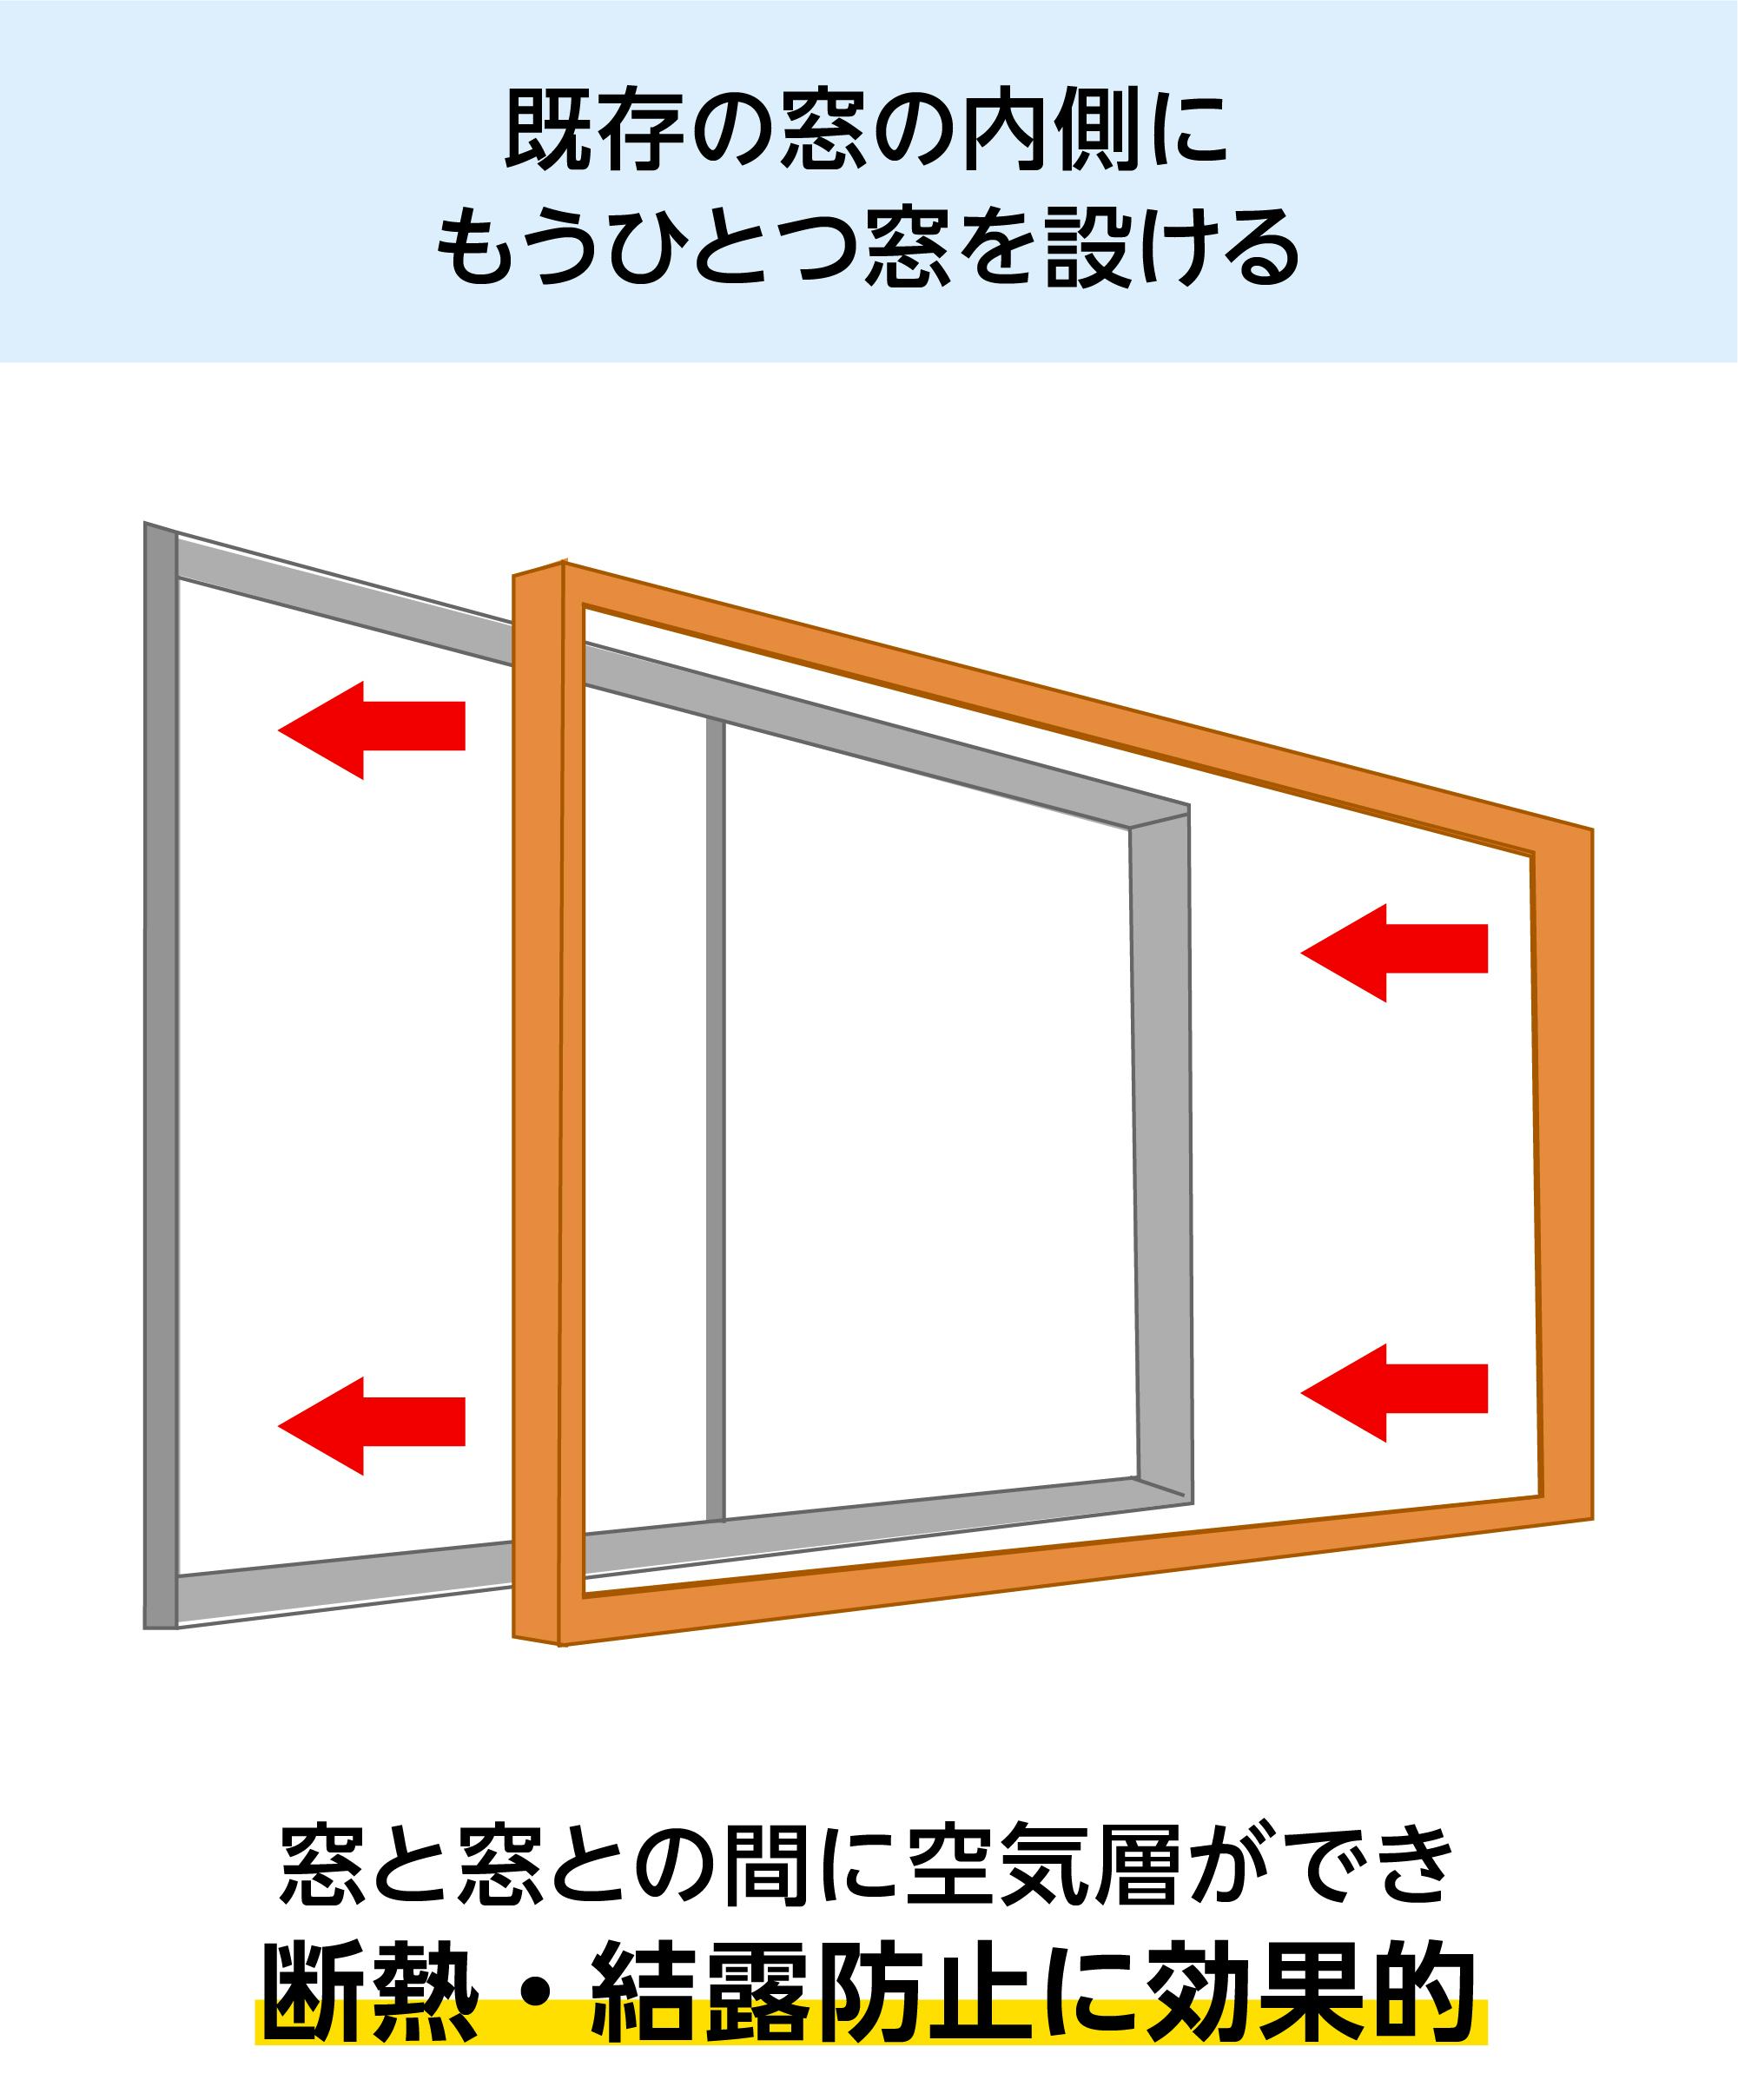 LIXILの内窓「インプラス」引き違い窓 for Renovation (4枚建て) - 既存の窓の内側にもうひとつ窓を設ける